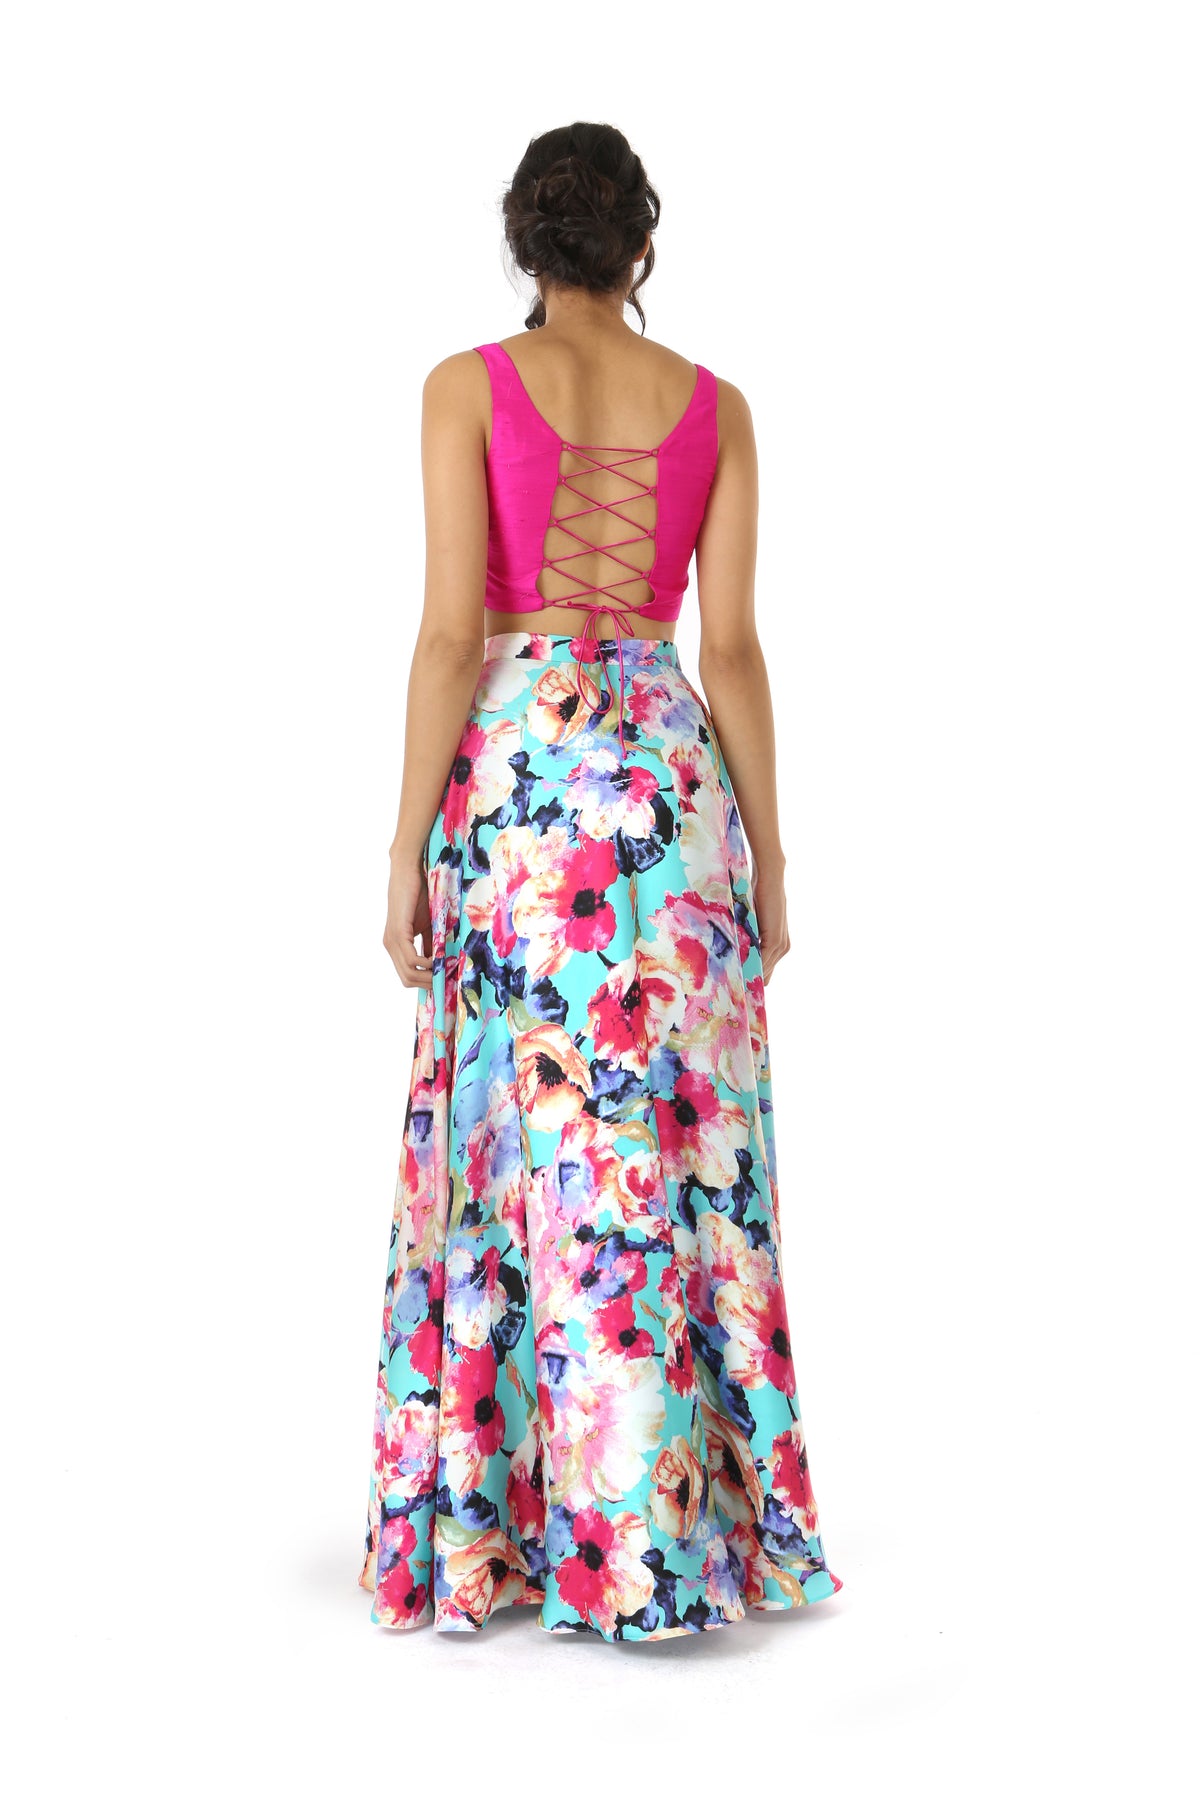 HAILEY Slit Satin Lehenga Skirt in Teal Multi Floral Print - Back View | HARLEEN KAUR